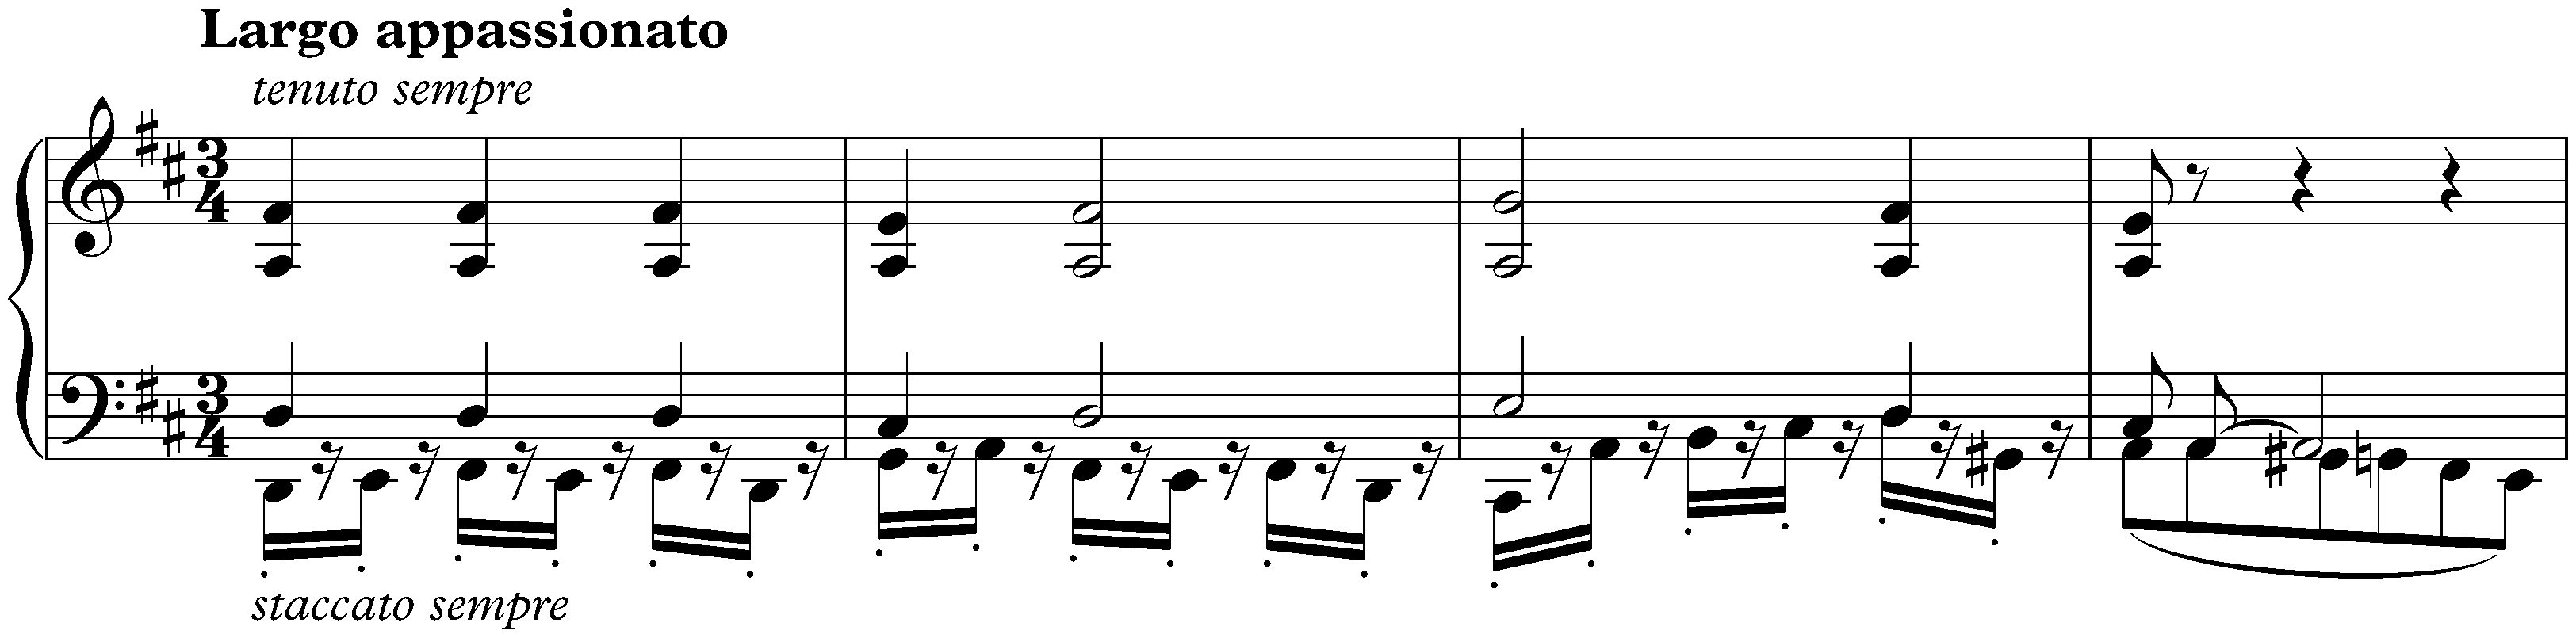 Sonata no. 2 in A major, op. 2 no. 2; 2. Largo appassionato